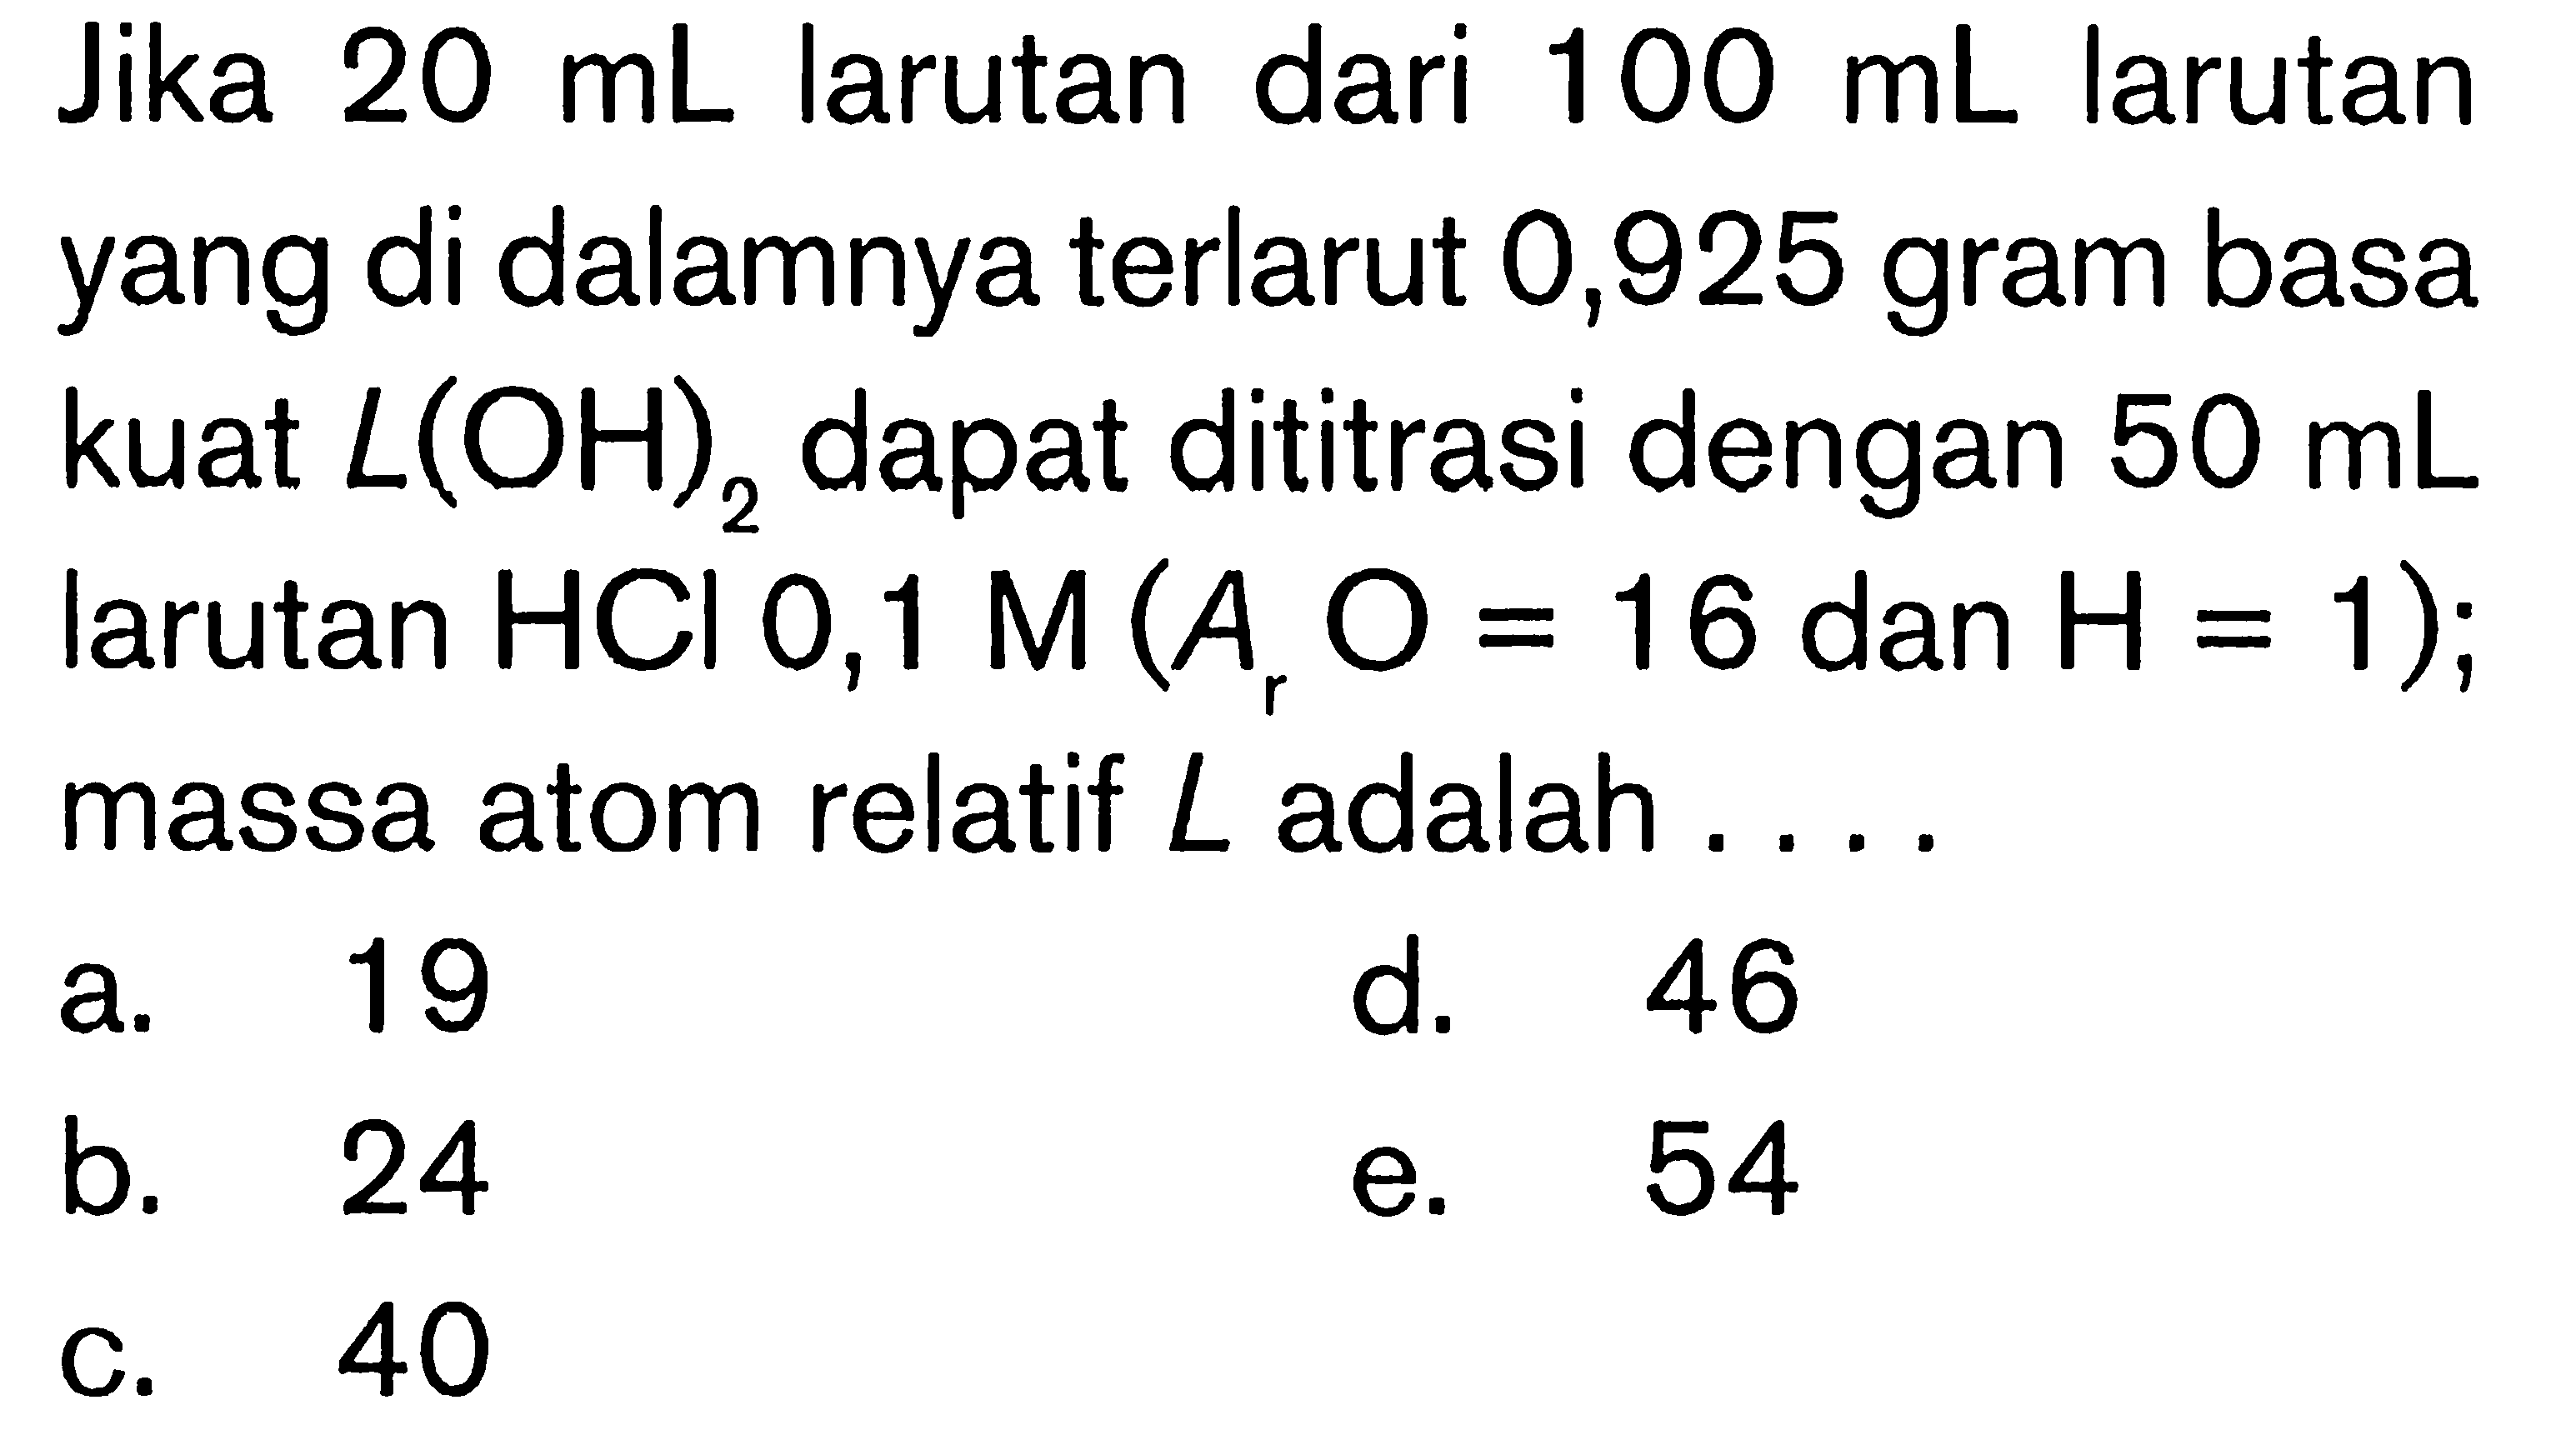 Jika  20 mL  larutan dari  100 mL  larutan yang di dalamnya terlarut 0,925 gram basa kuat  L(OH)2  dapat dititrasi dengan  50 mL  larutan  HCl 0,1 M(Ar O=16.  dan  .H=1) ;  massa atom relatif  L  adalah ....